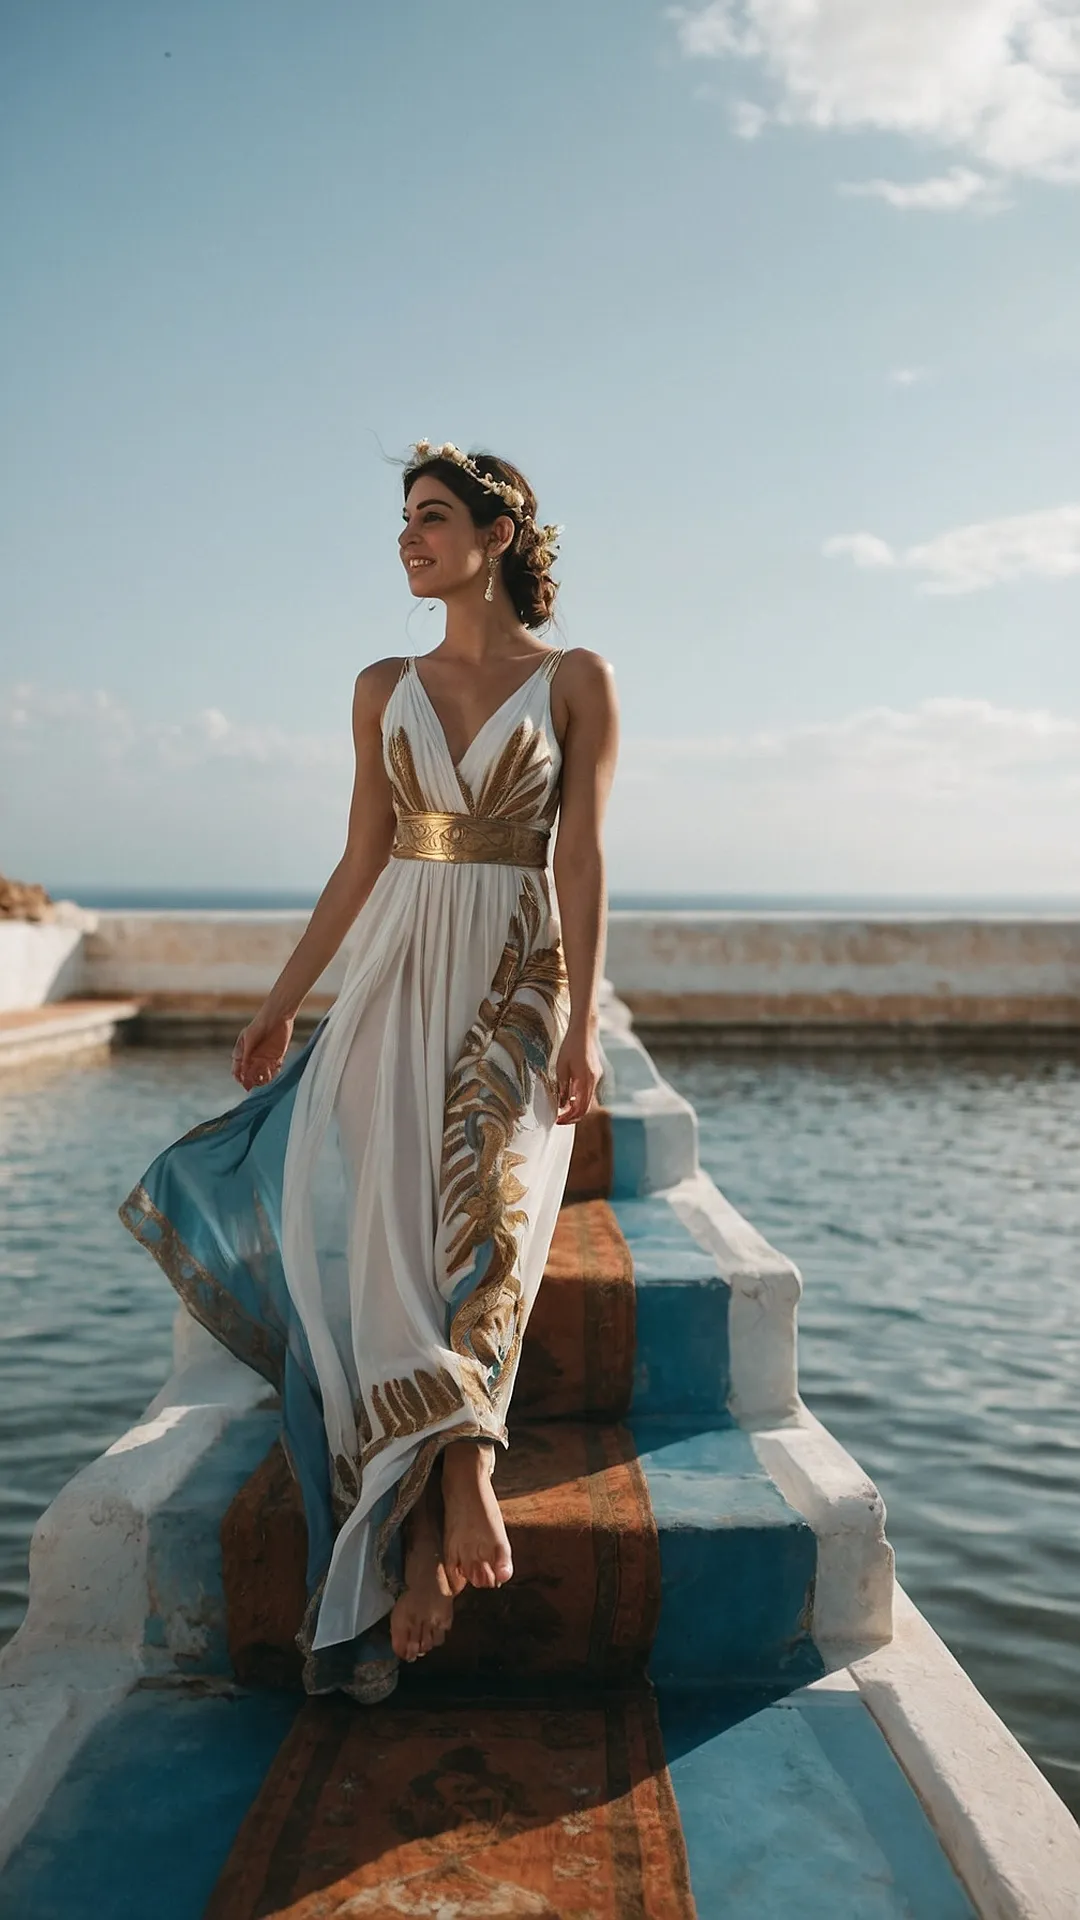 Mythical Wardrobe: Greek Goddess Fashion Trends